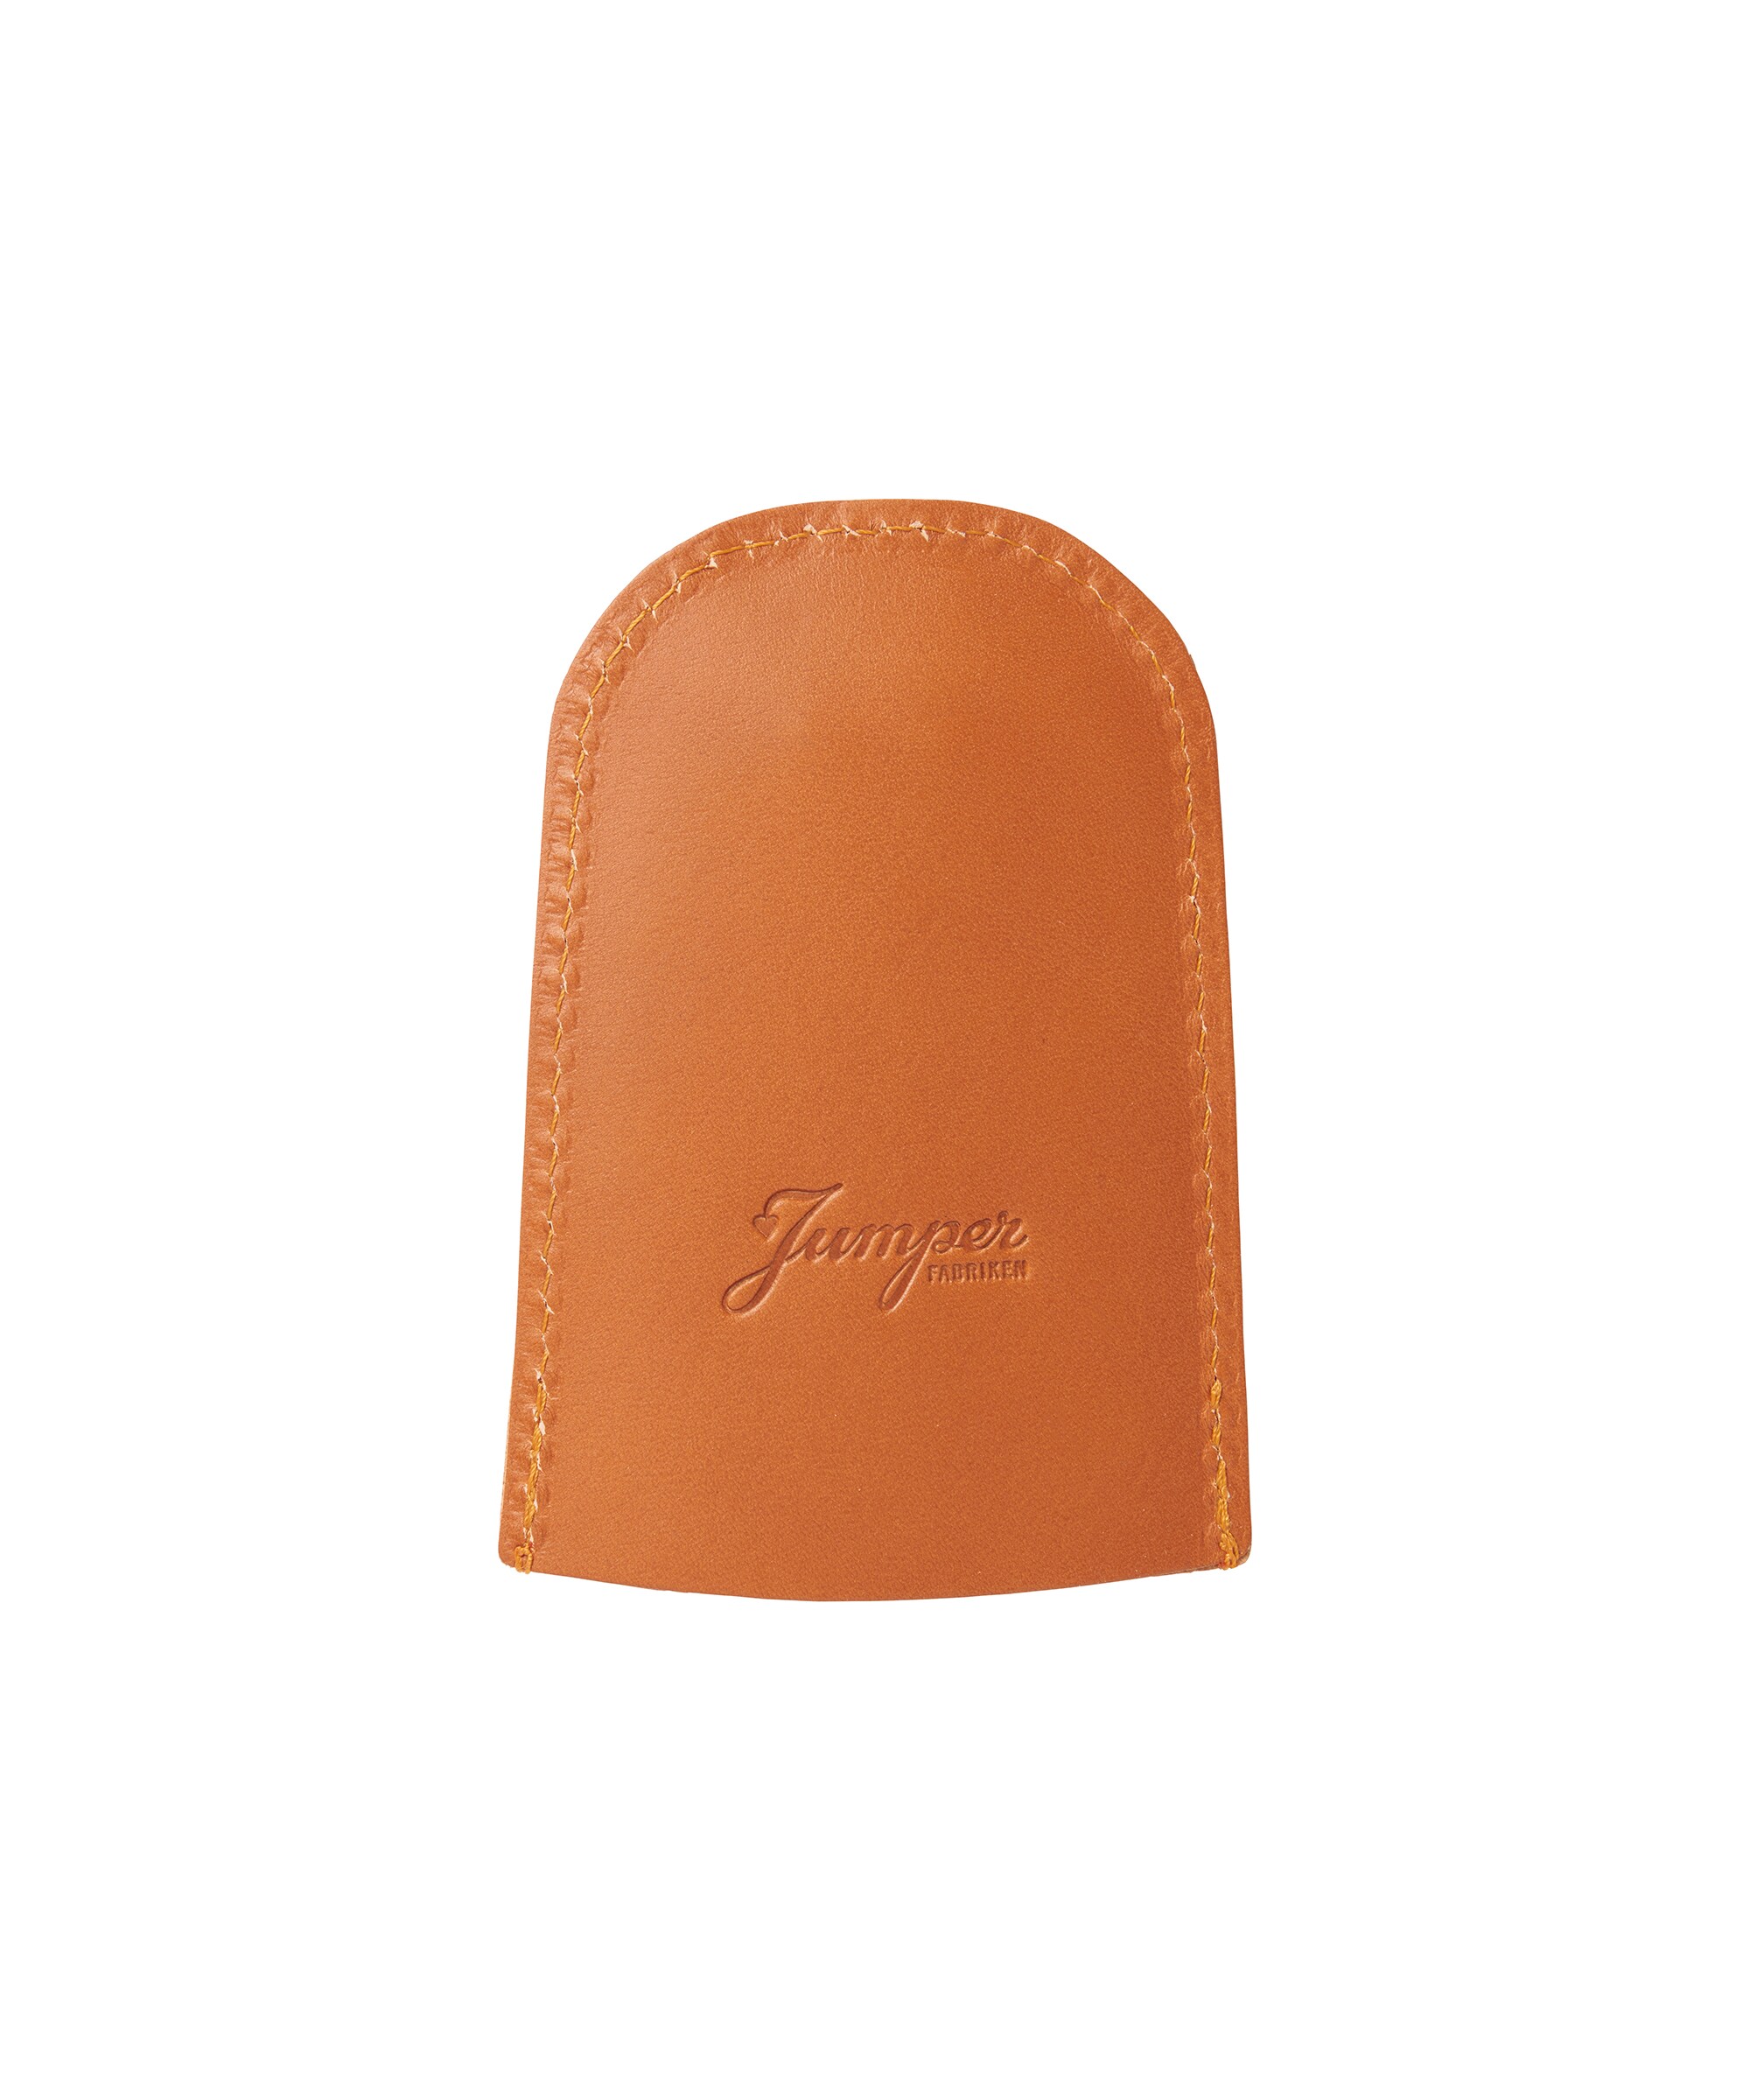 Leather key case Orange